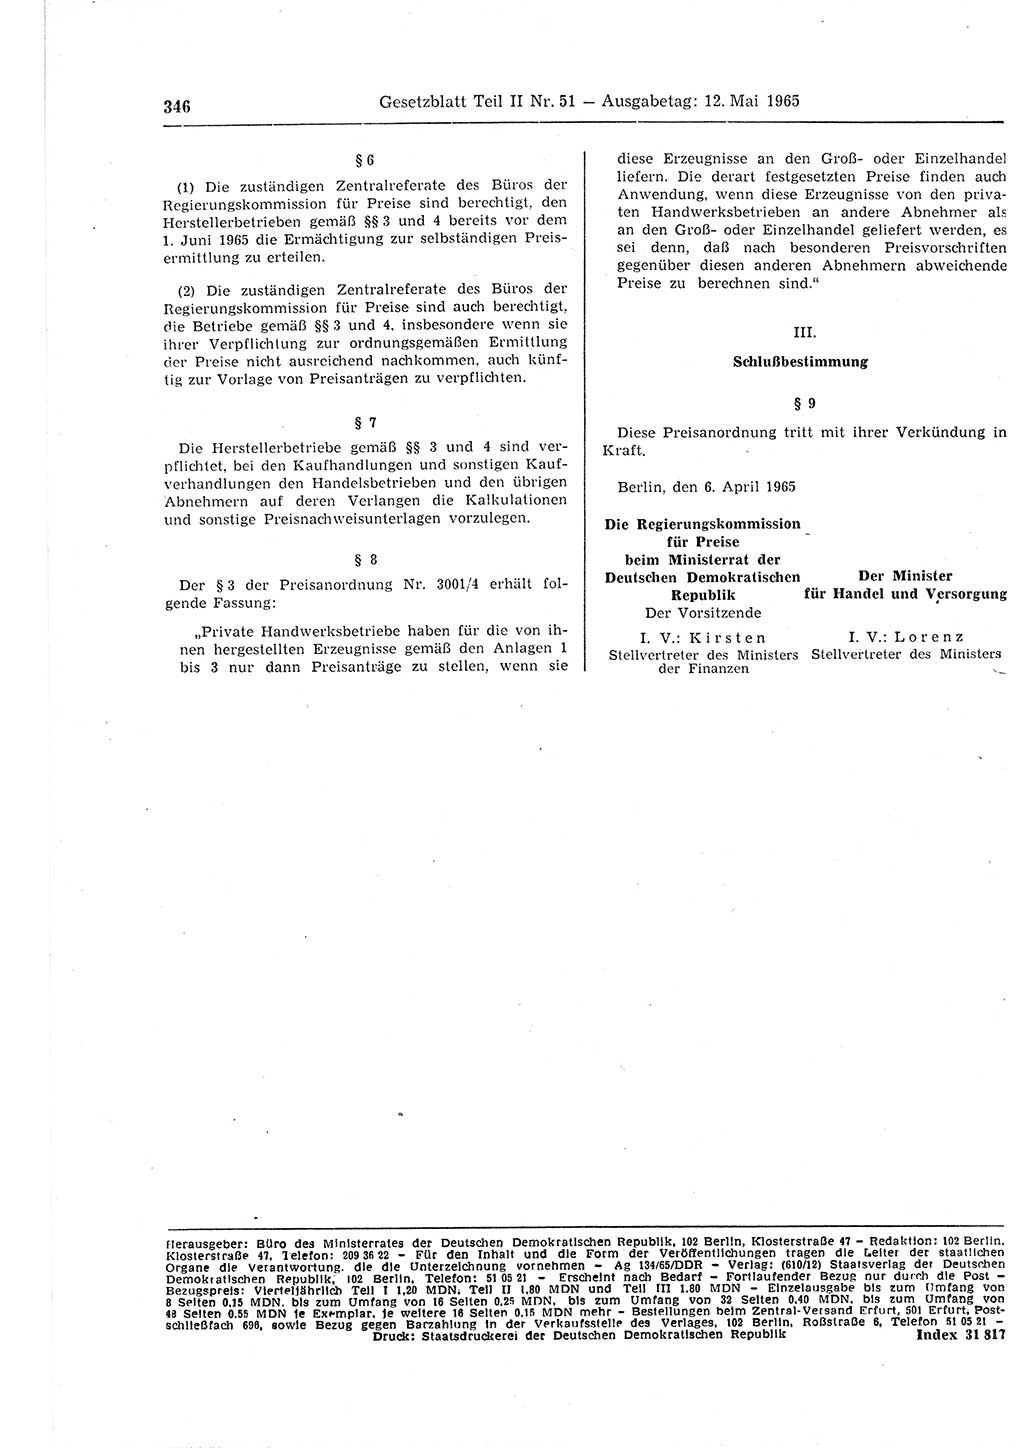 Gesetzblatt (GBl.) der Deutschen Demokratischen Republik (DDR) Teil ⅠⅠ 1965, Seite 346 (GBl. DDR ⅠⅠ 1965, S. 346)